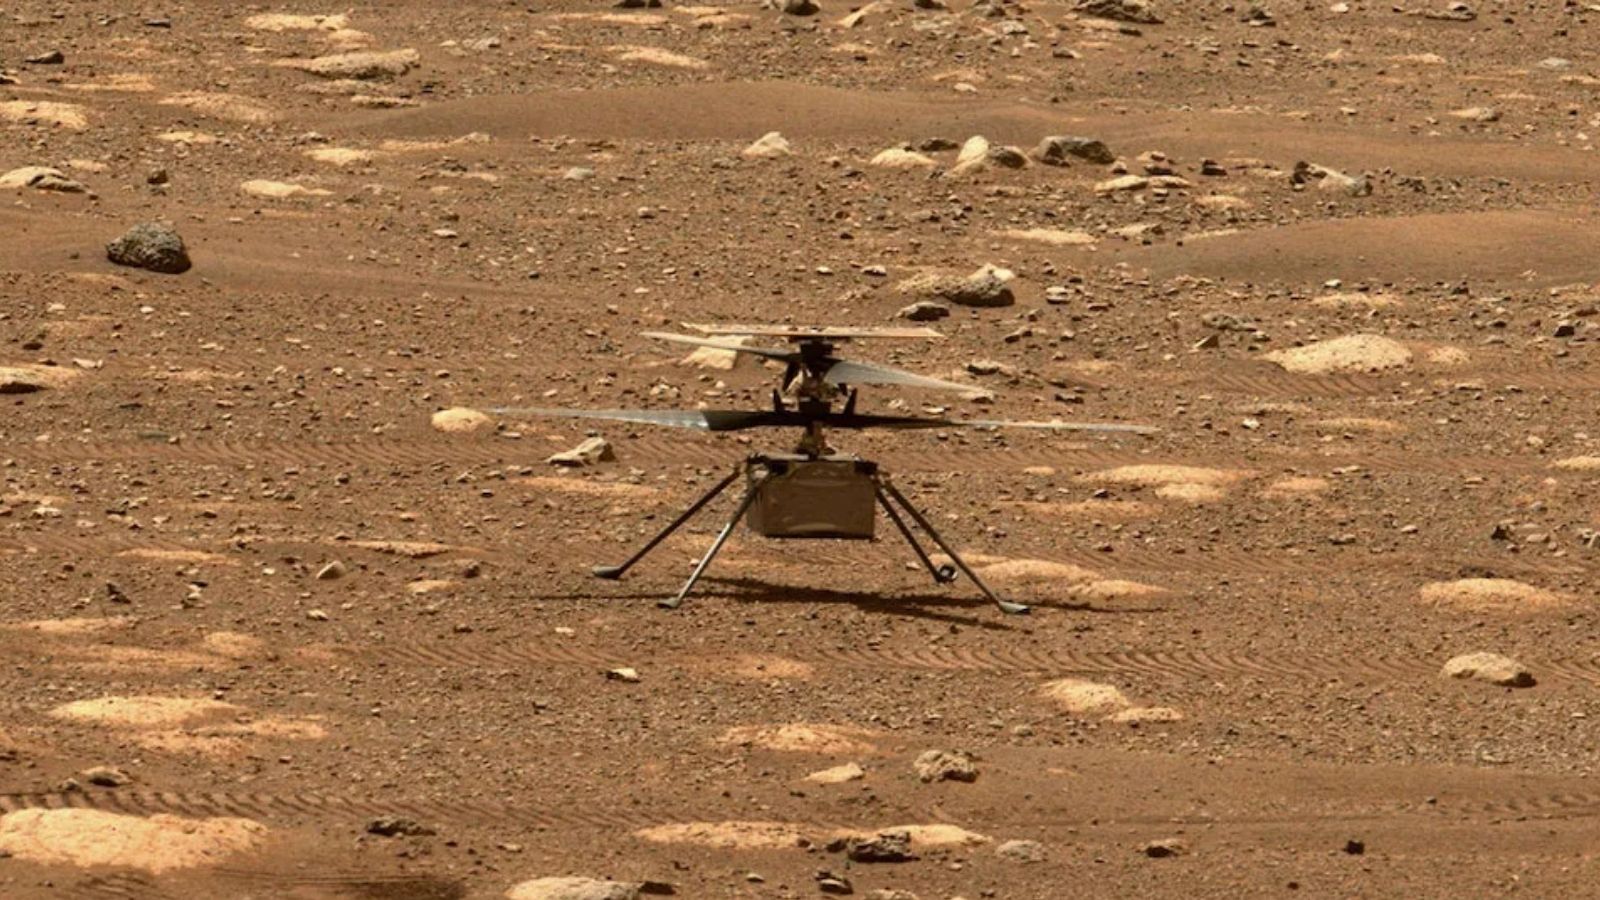 Ingenuity: addio all'elicottero della NASA su Marte dopo incidente